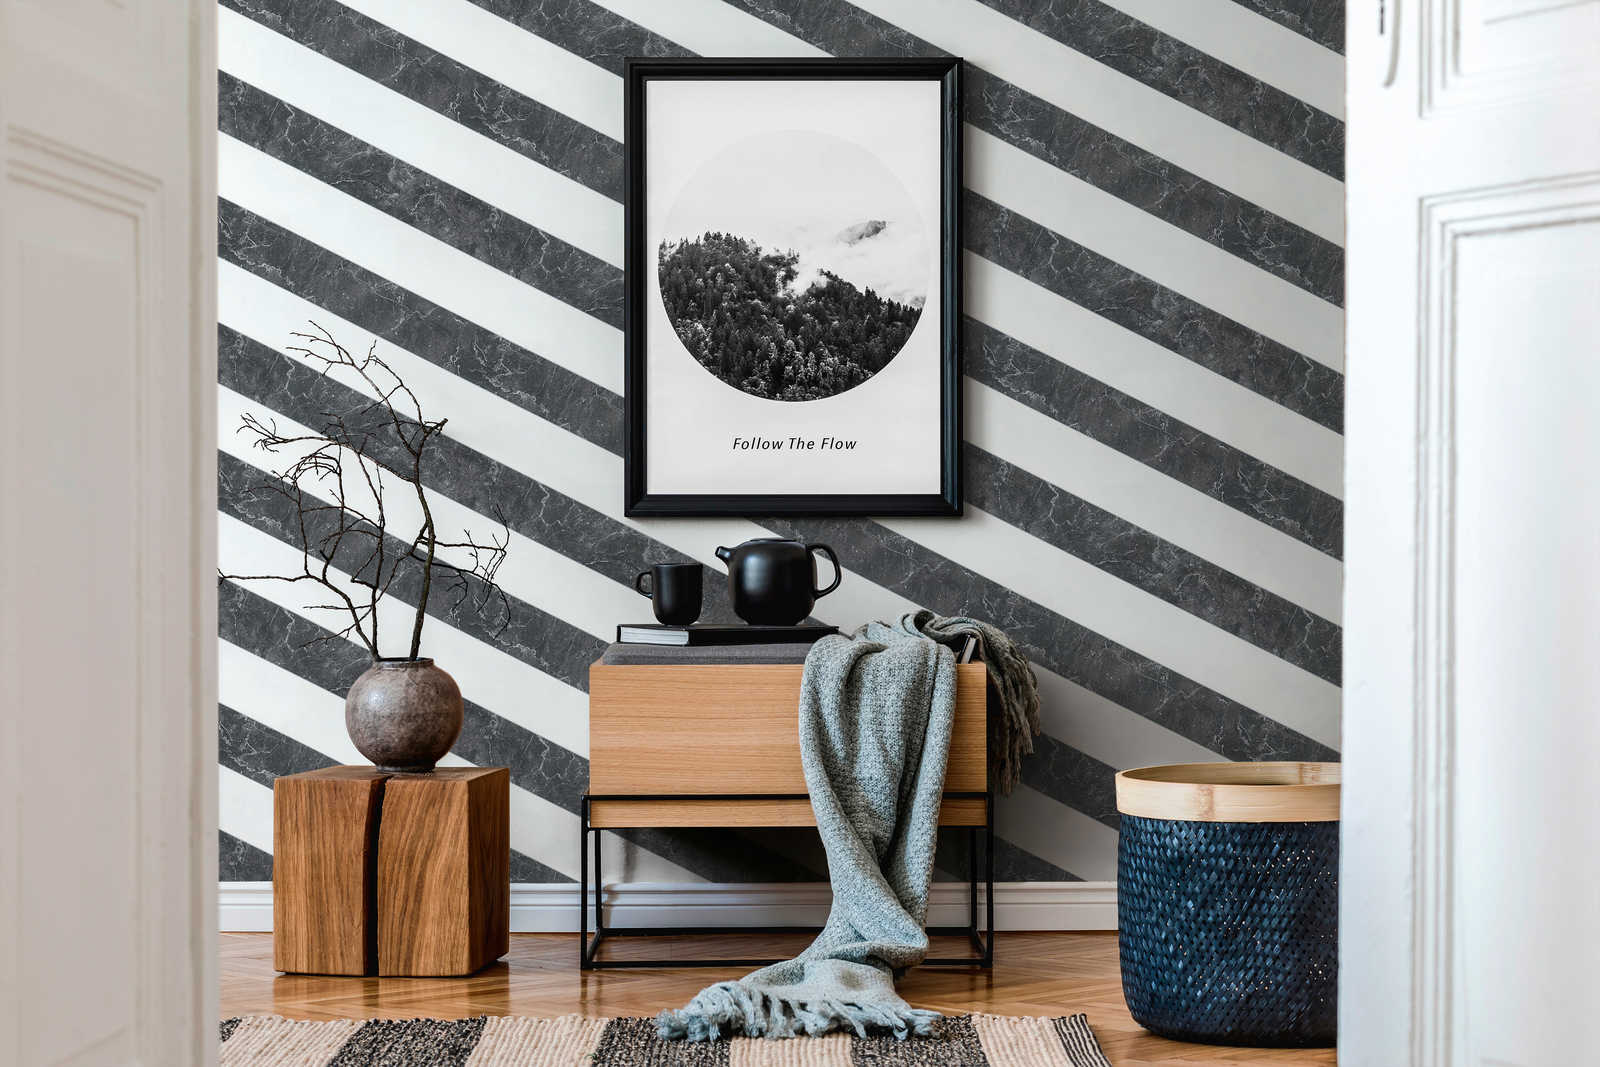             Streifen Tapete Marmoroptik Querstreifen Schwarz-Weiß Design
        